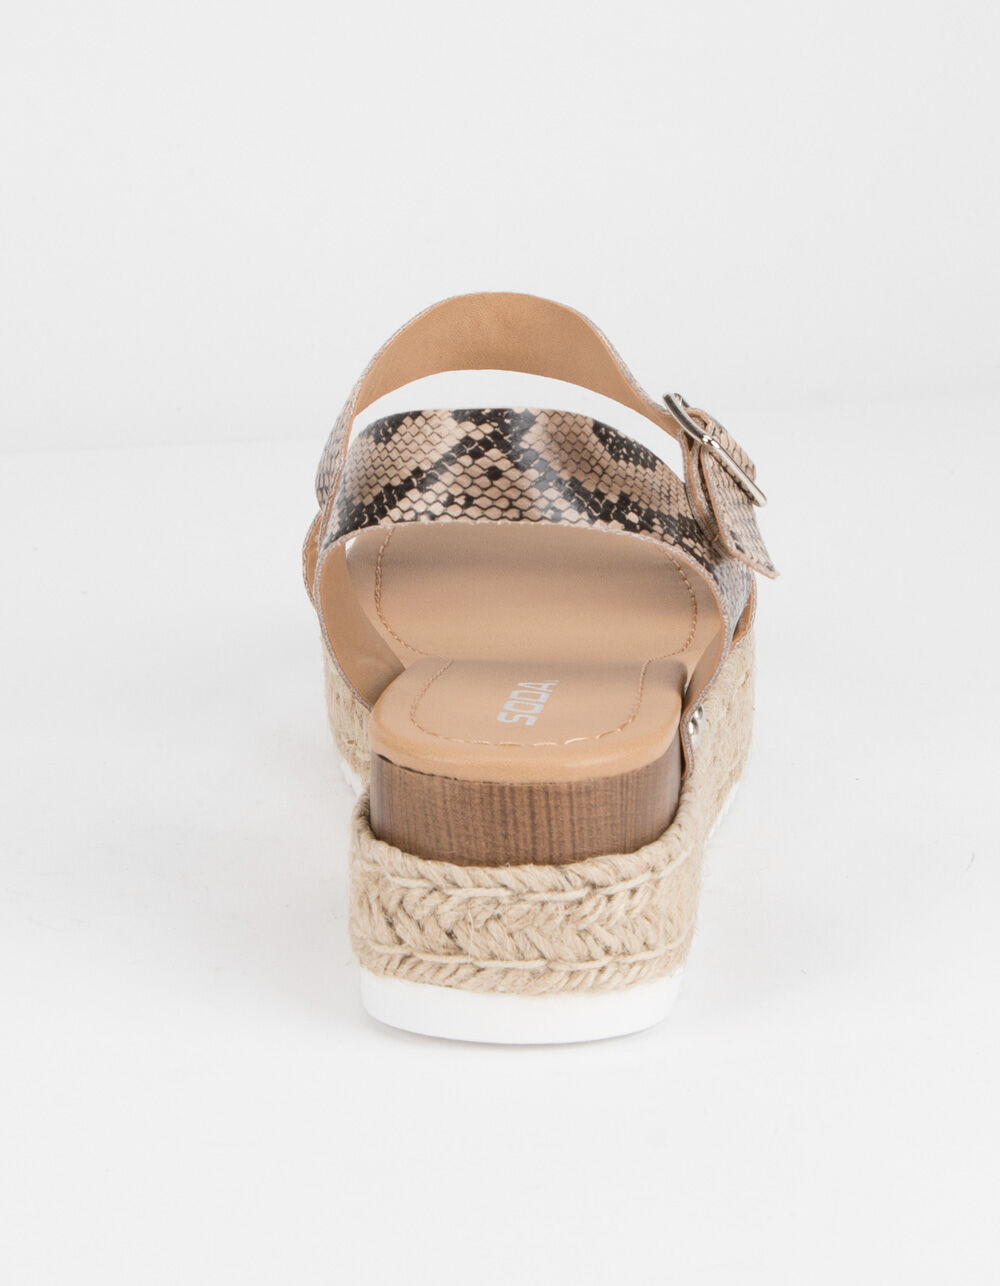 SODA Clip Espadrille Snake Womens Platform Sandals - SNAKE | Tillys